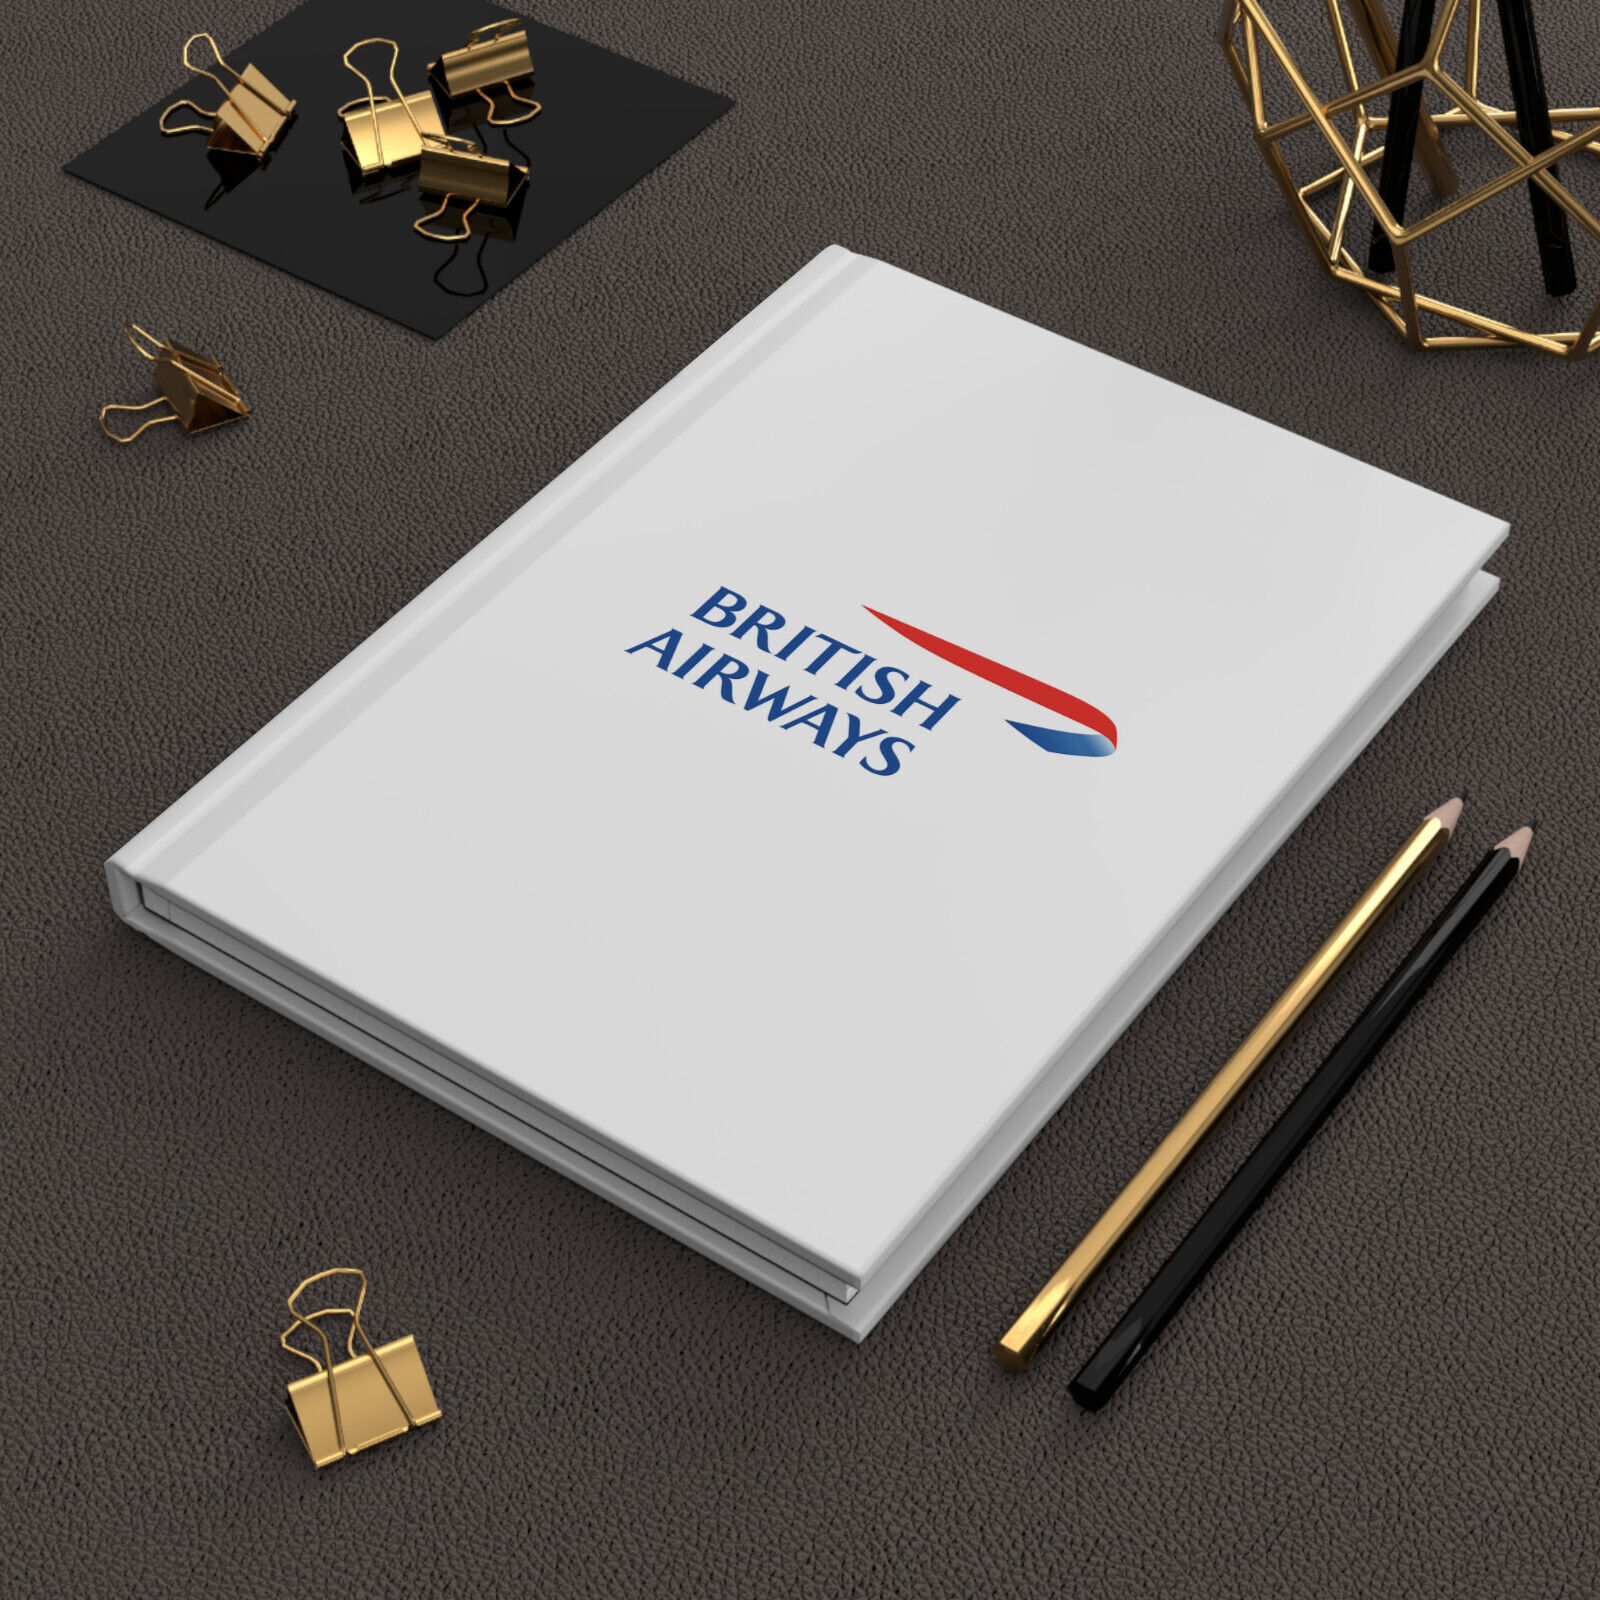 British Airways Hardcover Journal